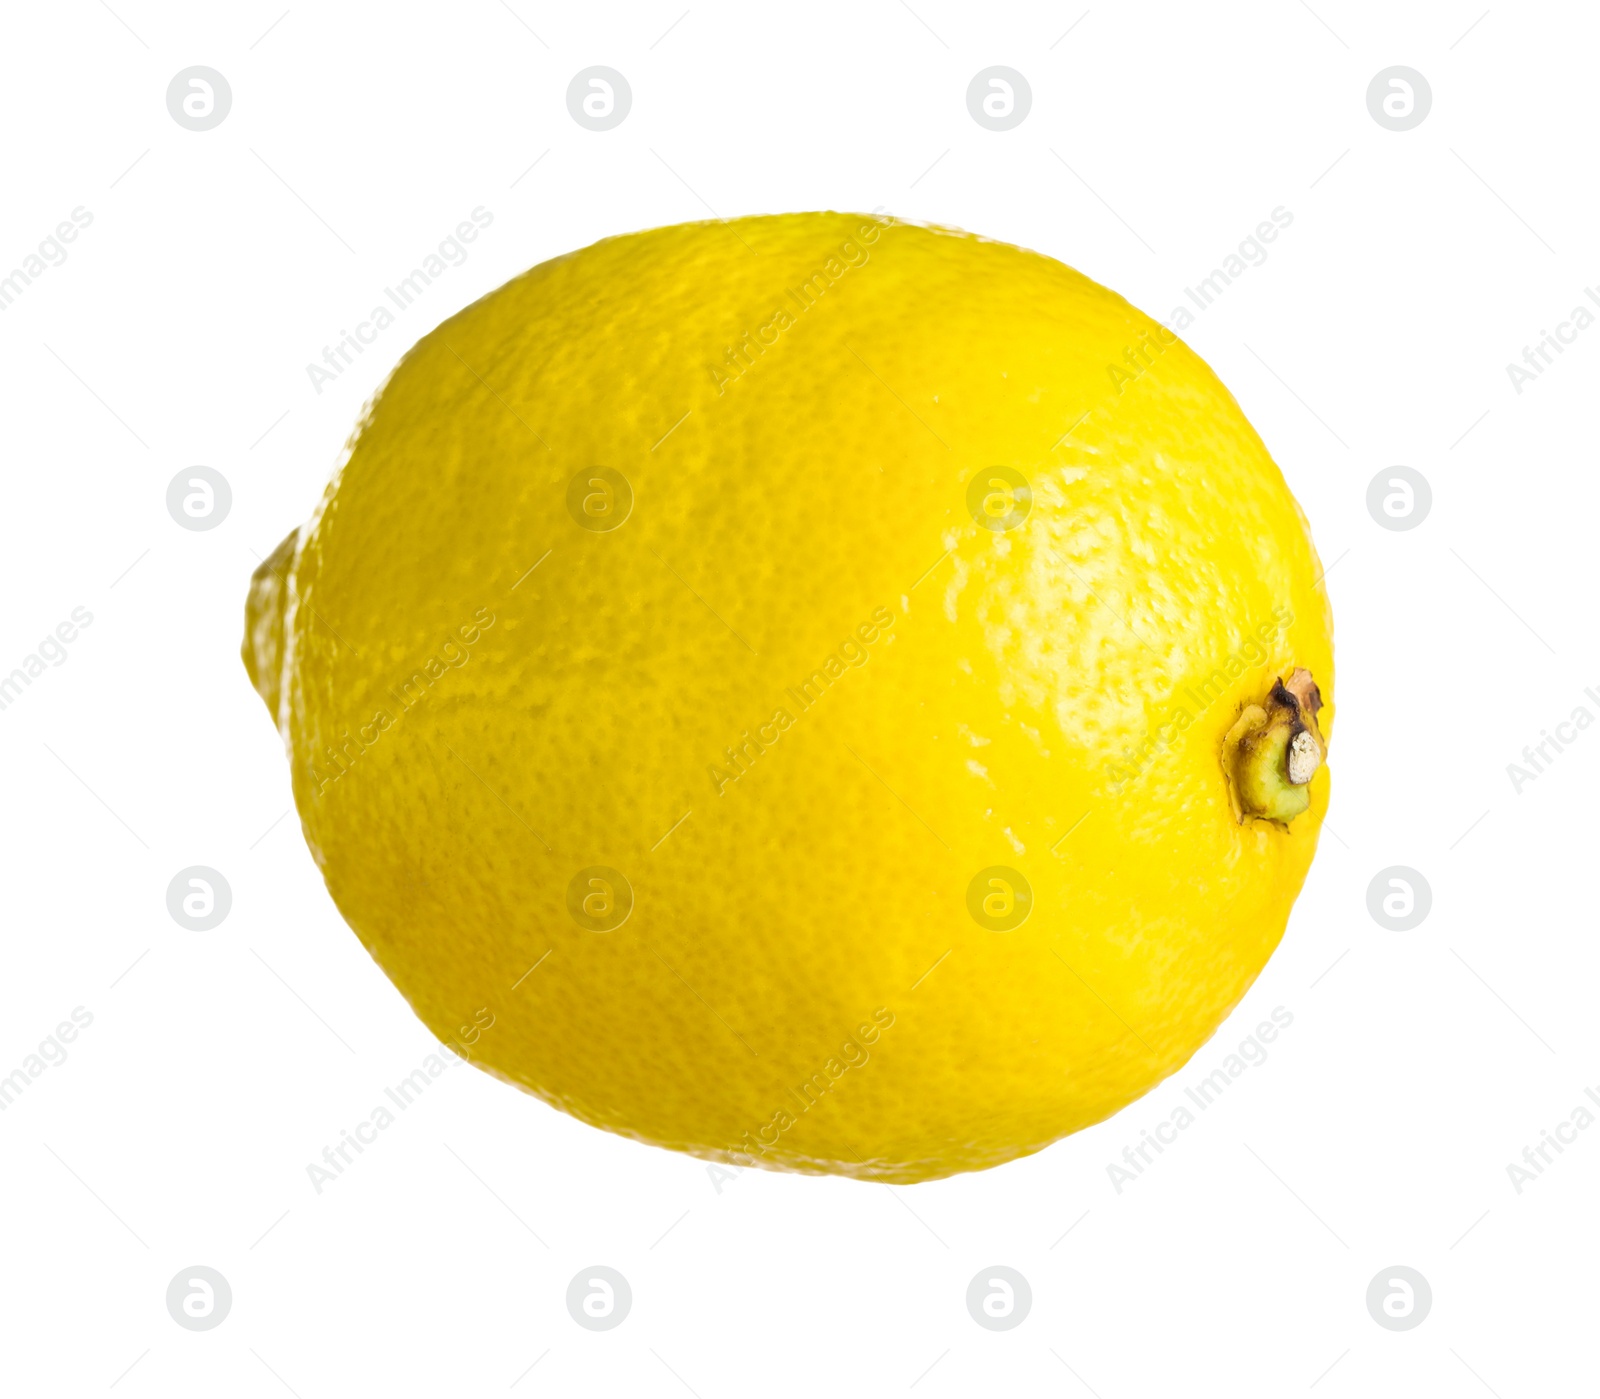 Photo of One whole ripe lemon isolated on white